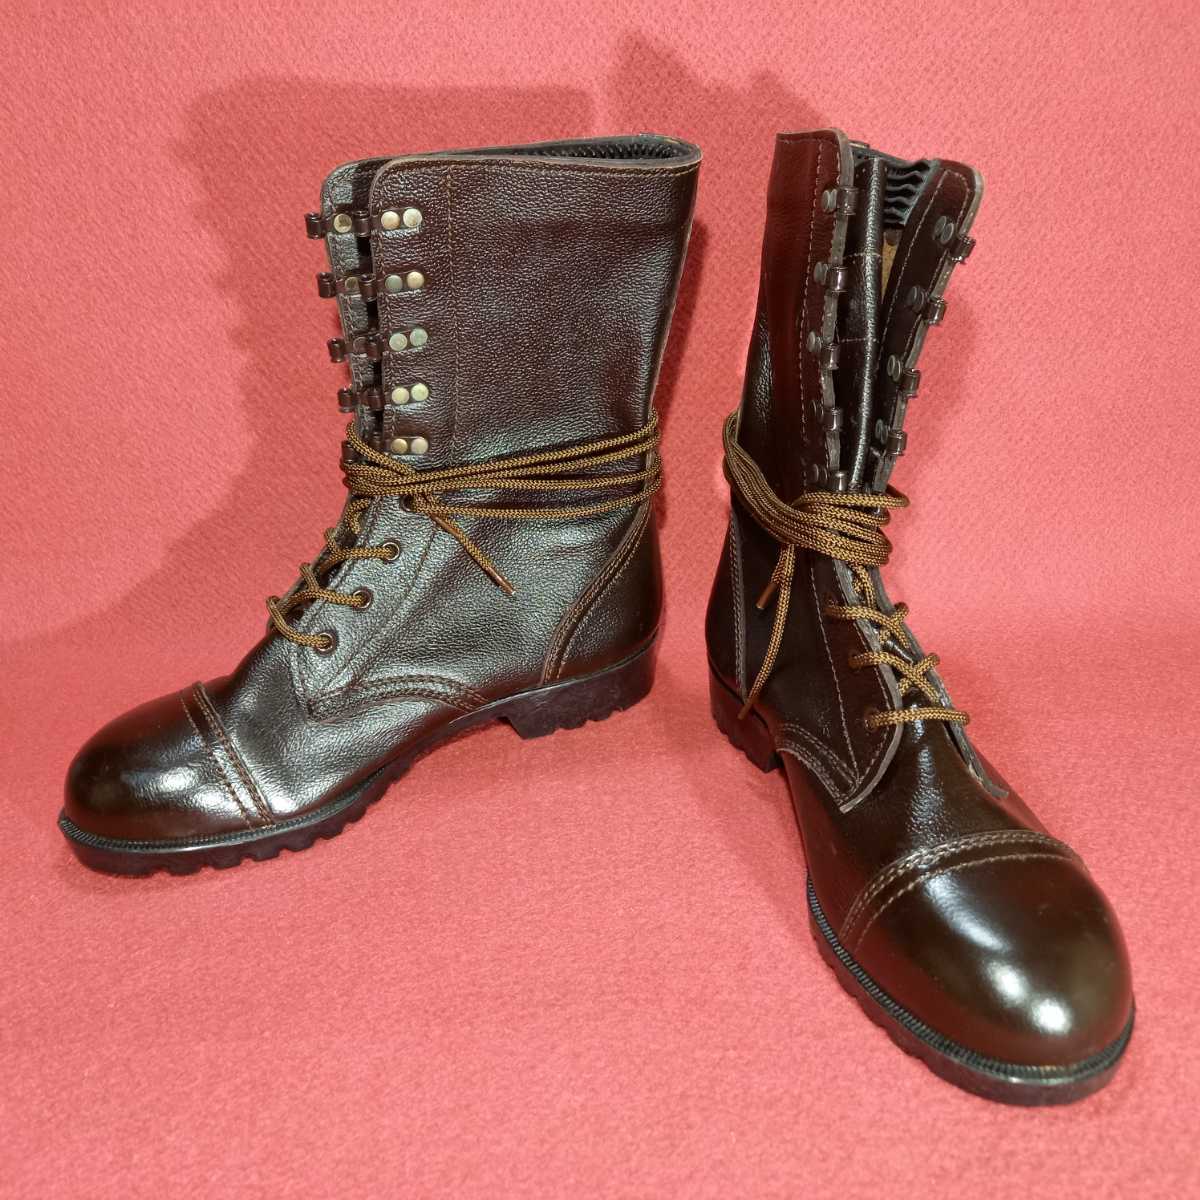 Yahoo!オークション - 陸上自衛隊 1994年度 旧型半長靴/旧式 戦闘靴